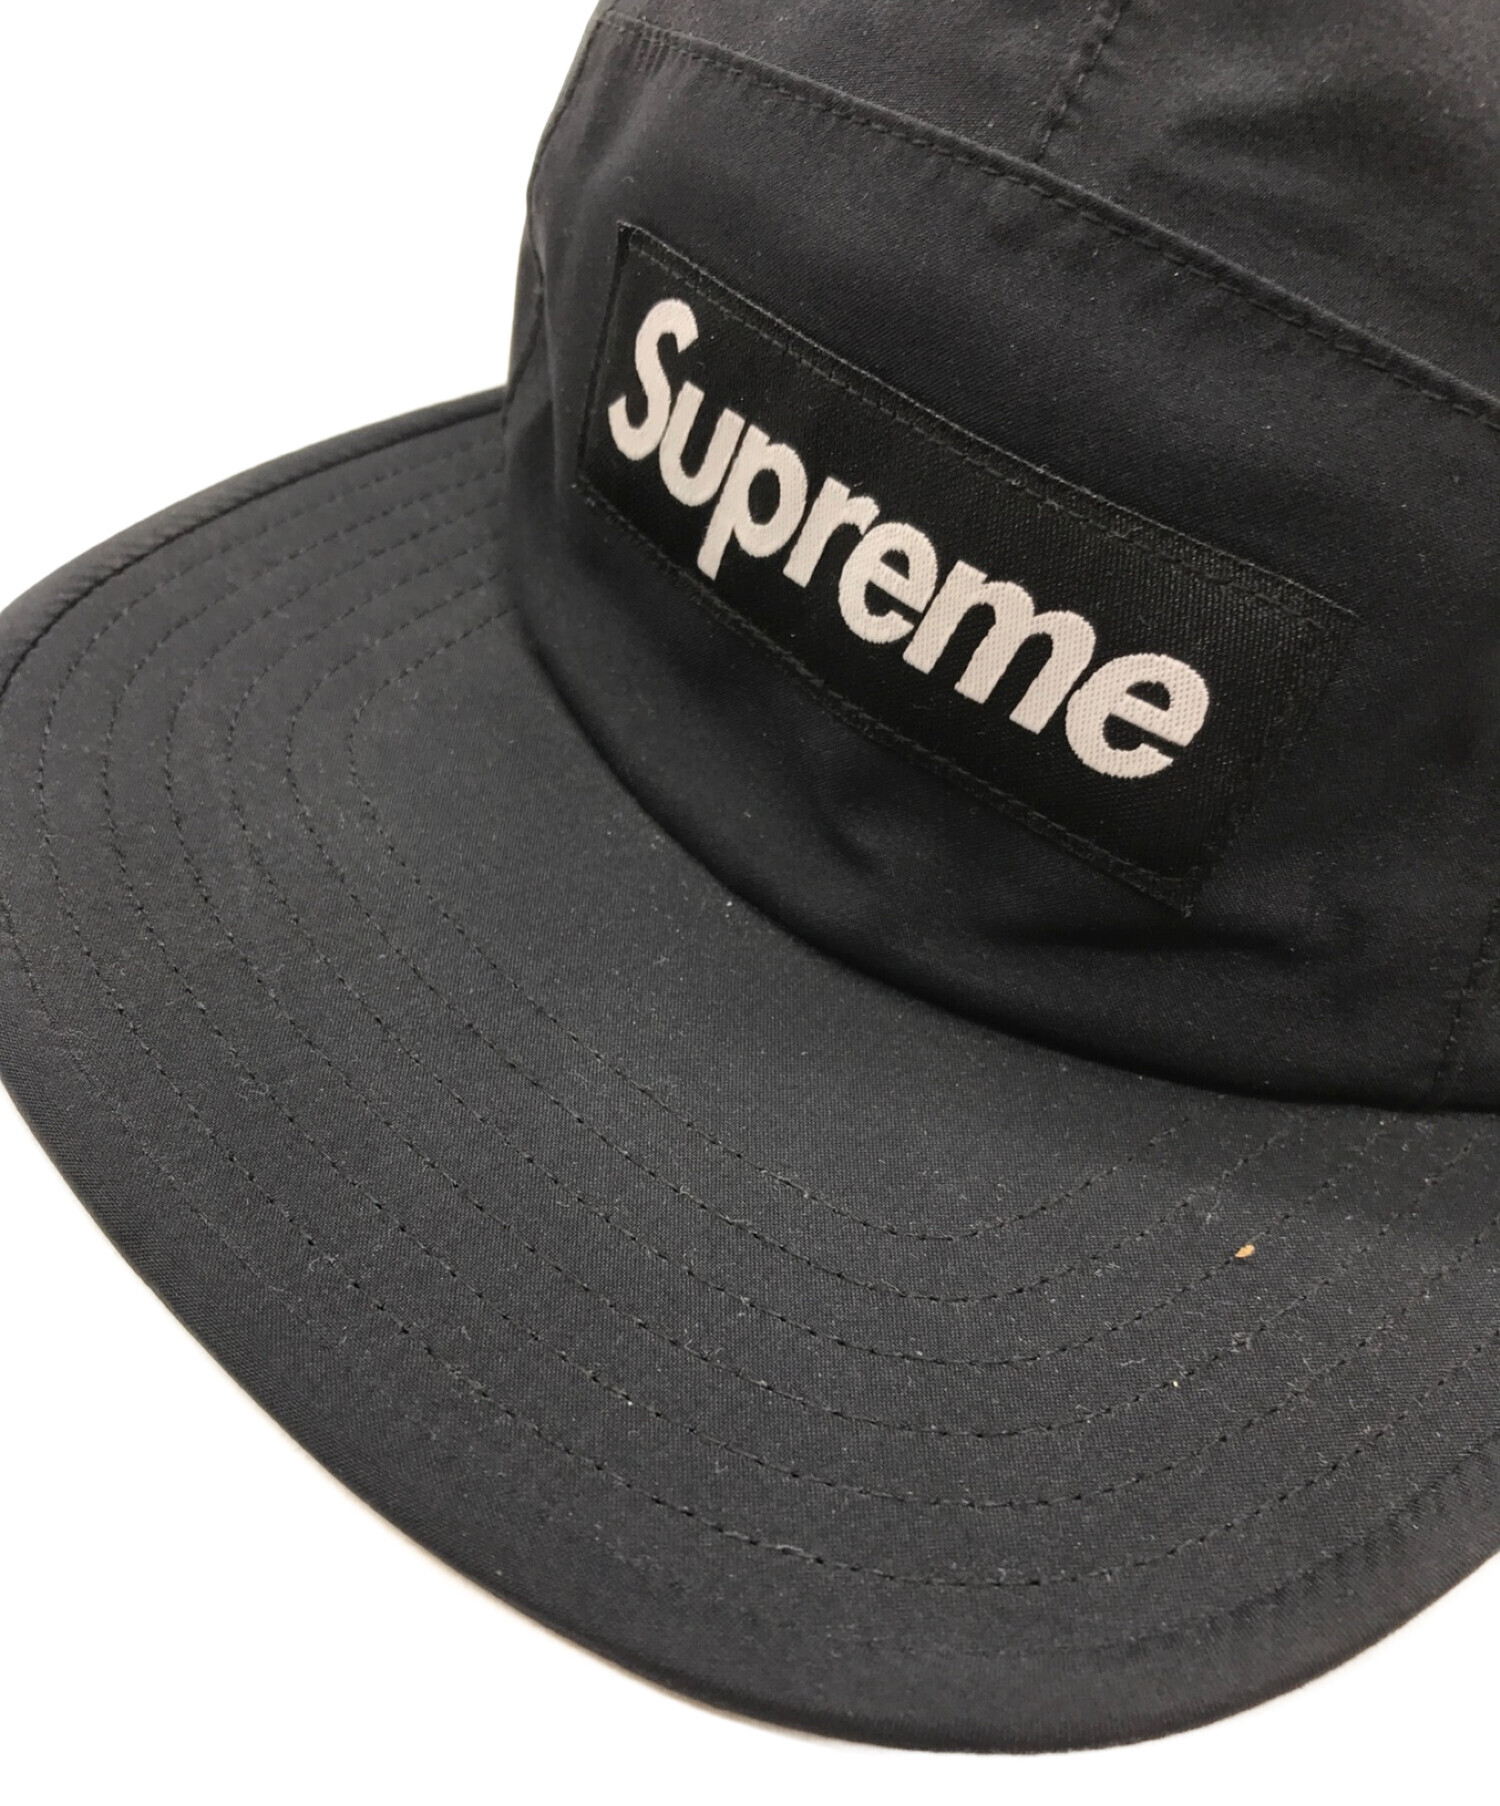 【公式】Supreme / CAMP CAP / ブラック / キャップ キャップ